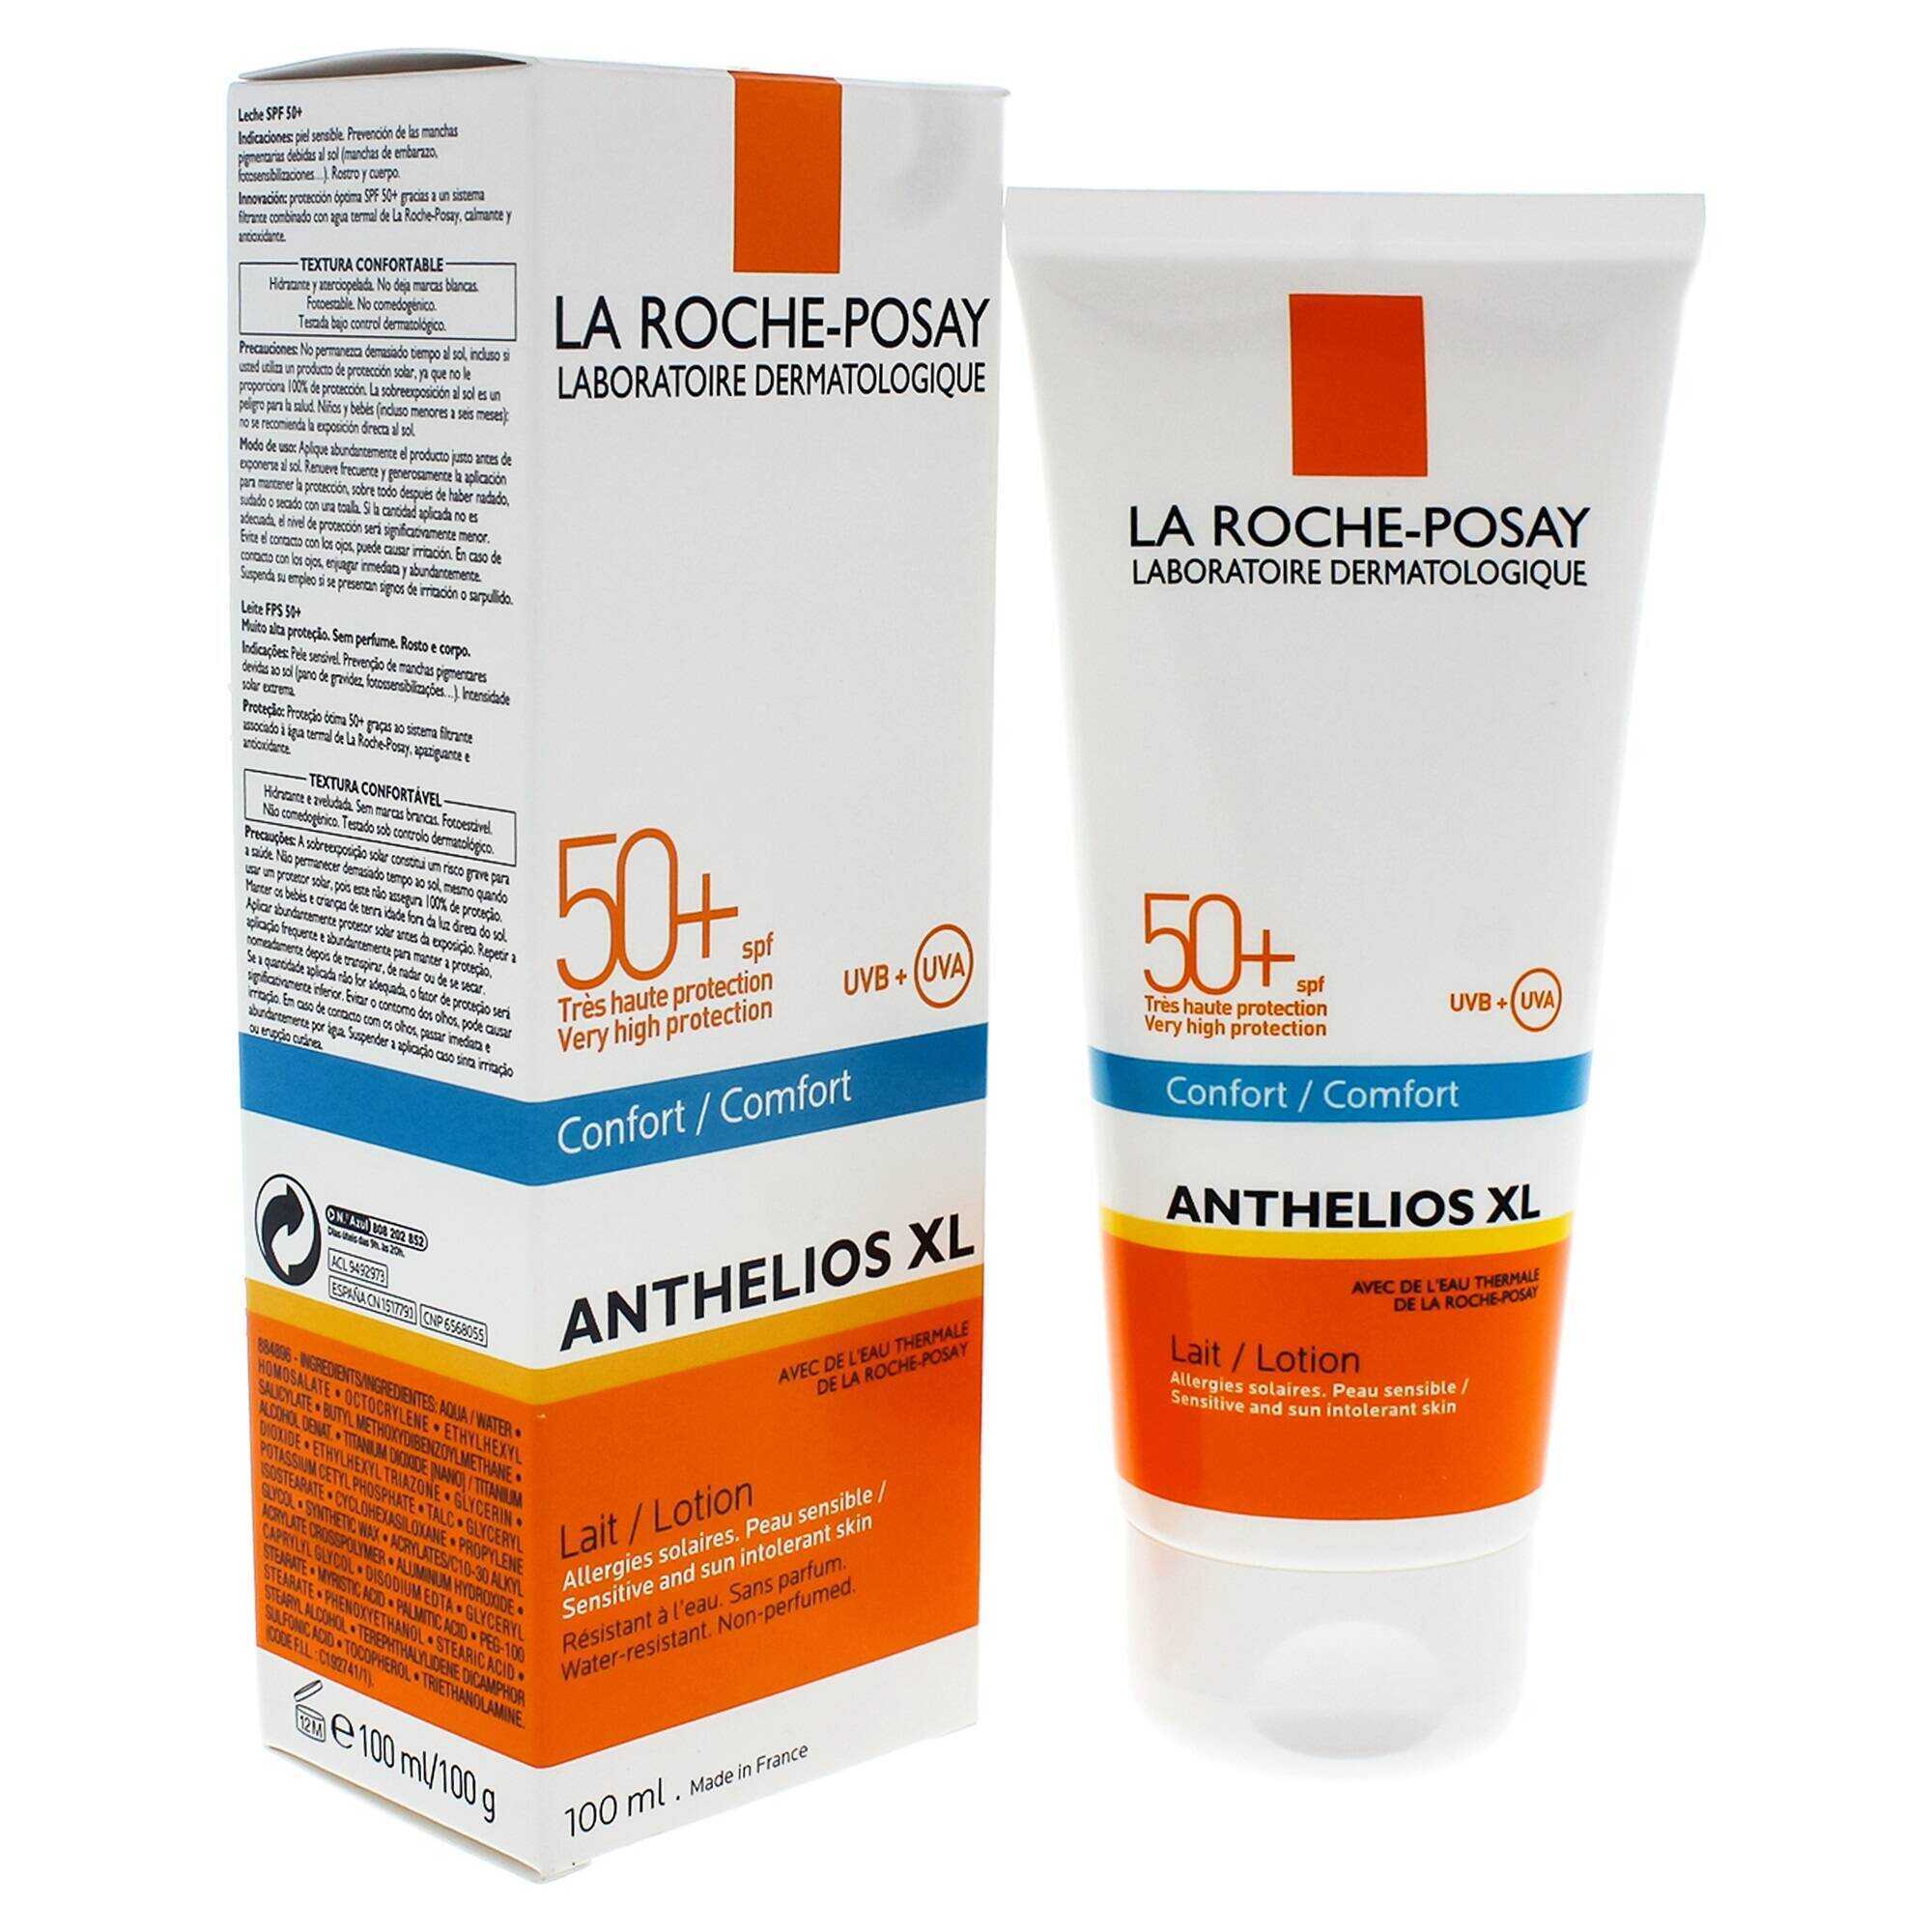 لوسیون ضد آفتاب کامفورت Anthelios XL لاروش پوزای | SPF 50+، محافظت از پوست حساس